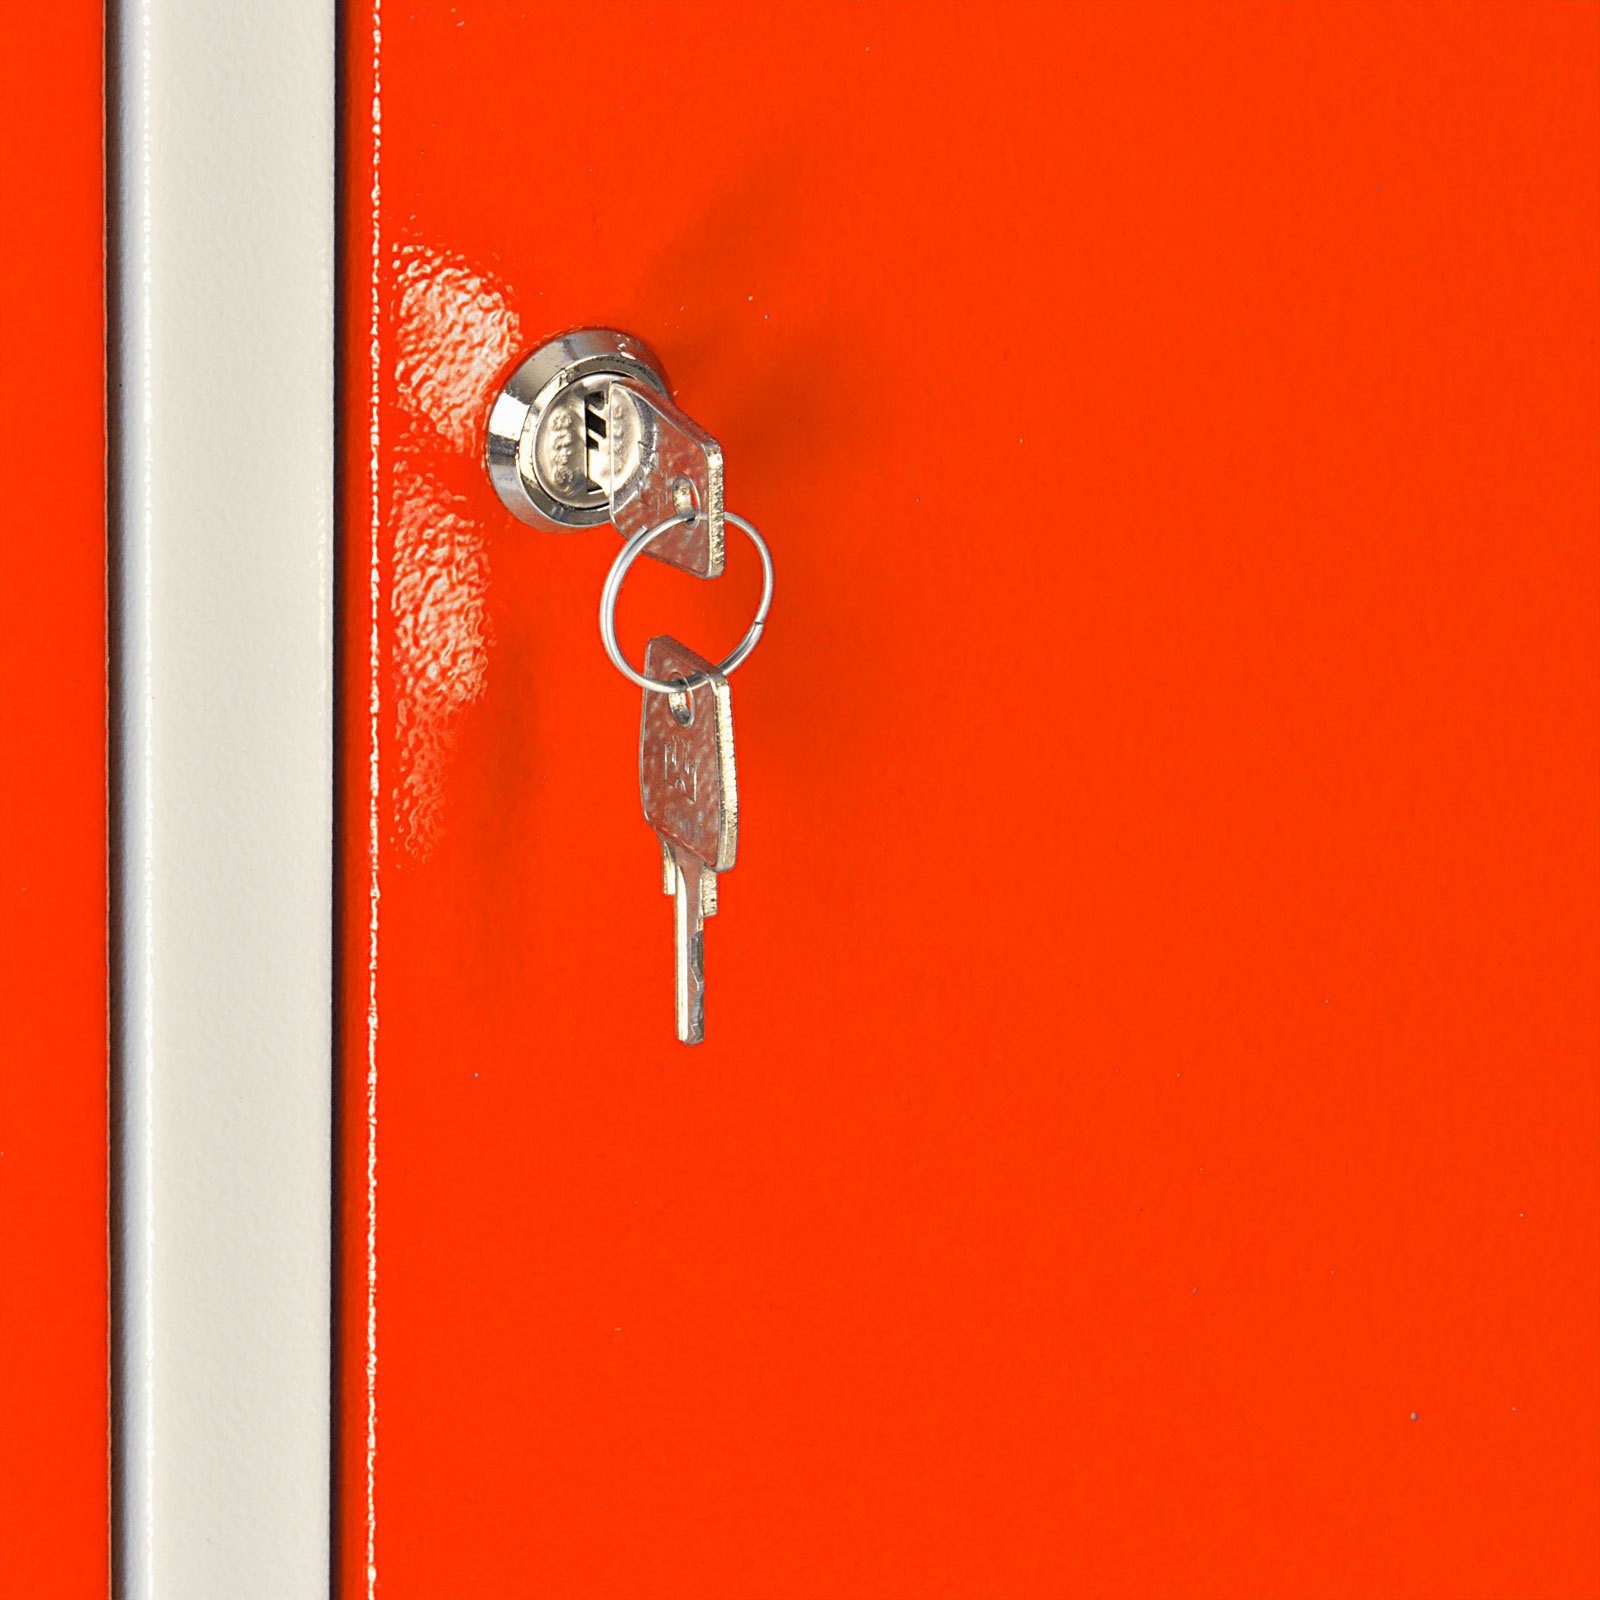 Ermine Garderobenschrank mit Türen, PROREGAL® 178x60x50cm, HxBxT 2 Garderobenschrank Grau/Orange Hellrotorange